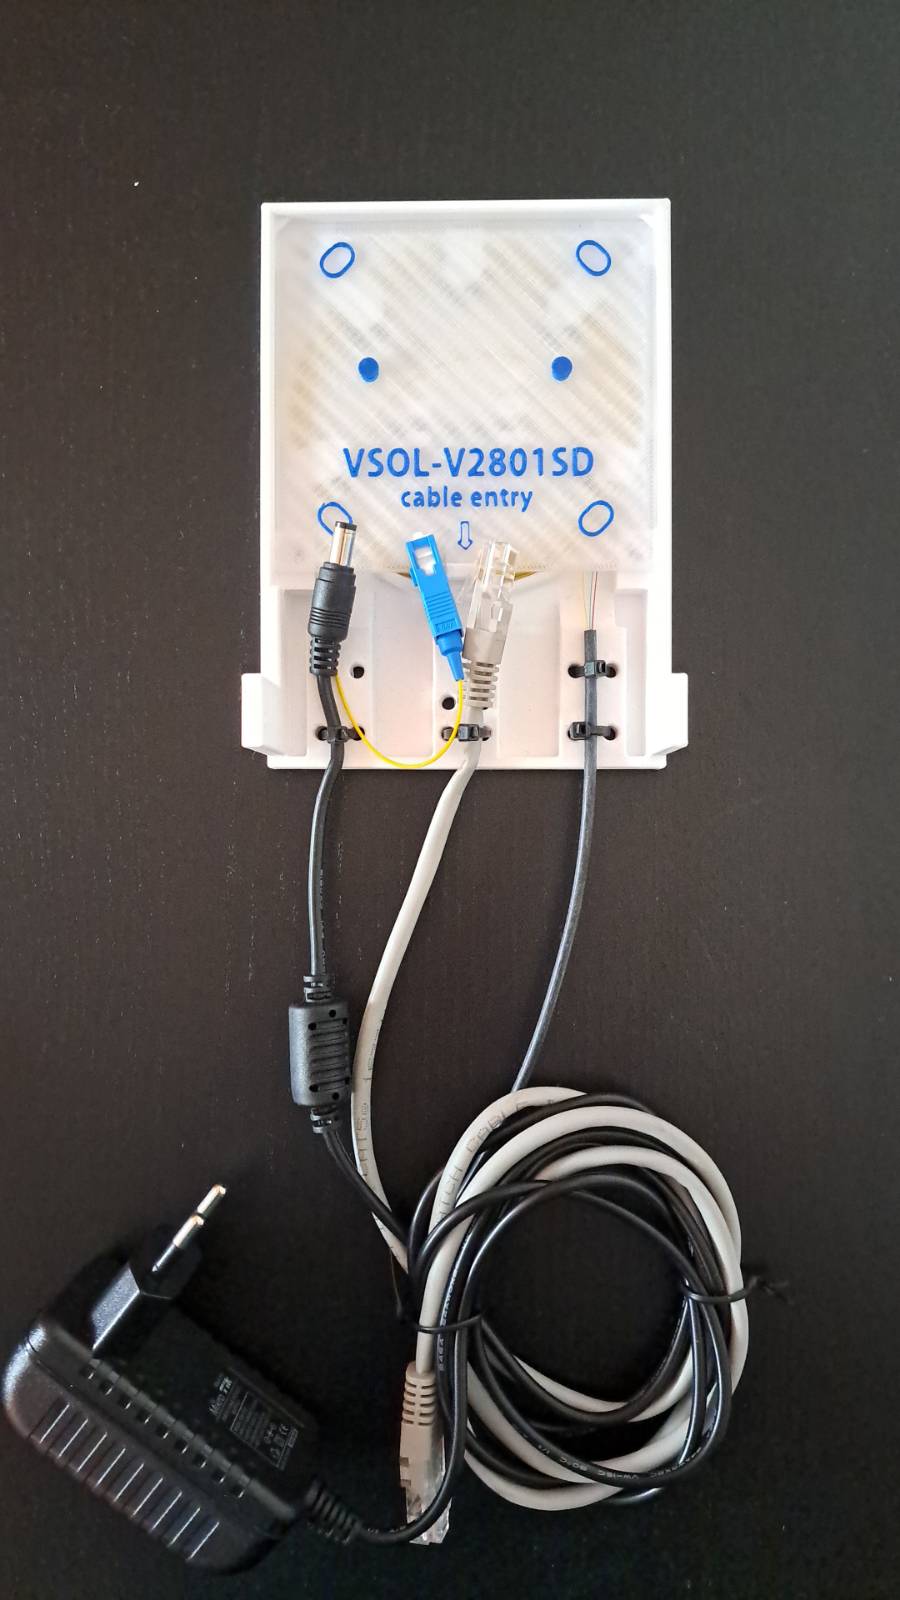 Domácí instalační rozvaděč S pro V SOL- V2801SD